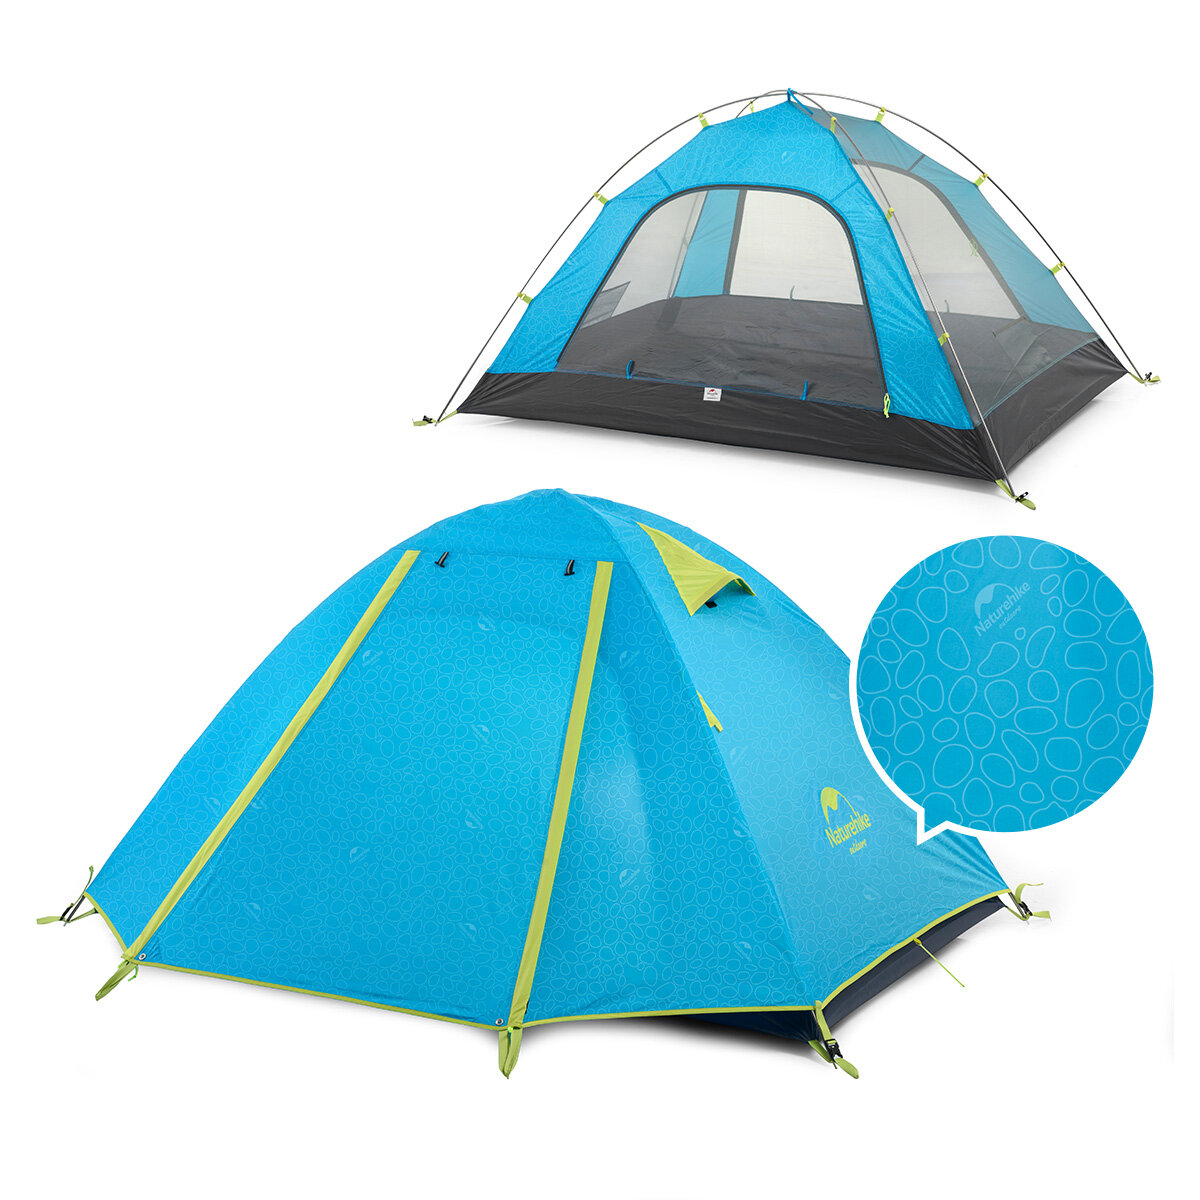 Tenda da campeggio per esterni Naturehike NH15Z003-P con doppio palo in alluminio, protezione UPF50+ contro i raggi UV e impermeabile PU2000